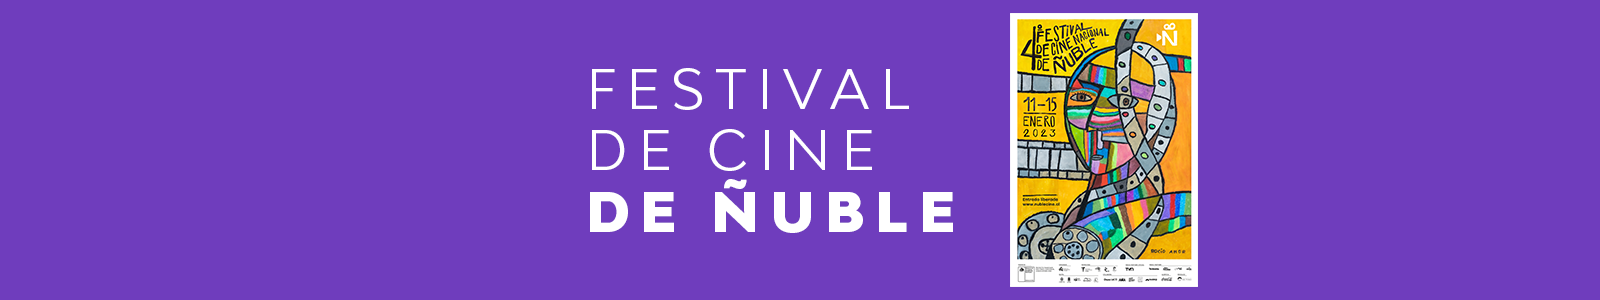 Festival de Cine de Ñuble